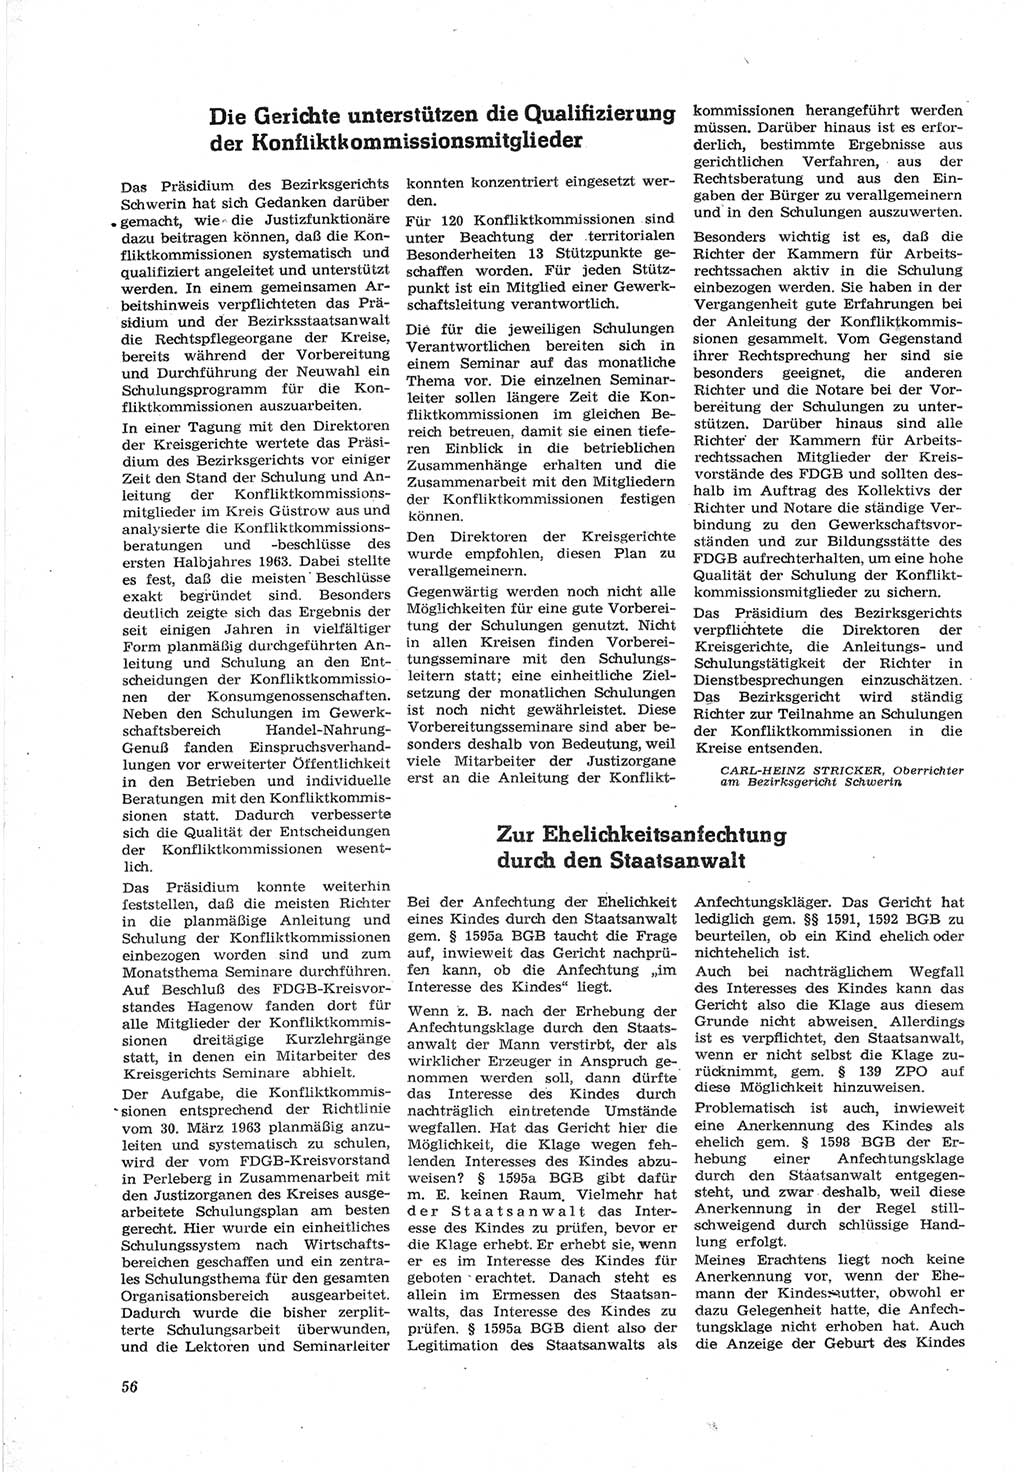 Neue Justiz (NJ), Zeitschrift für Recht und Rechtswissenschaft [Deutsche Demokratische Republik (DDR)], 18. Jahrgang 1964, Seite 56 (NJ DDR 1964, S. 56)